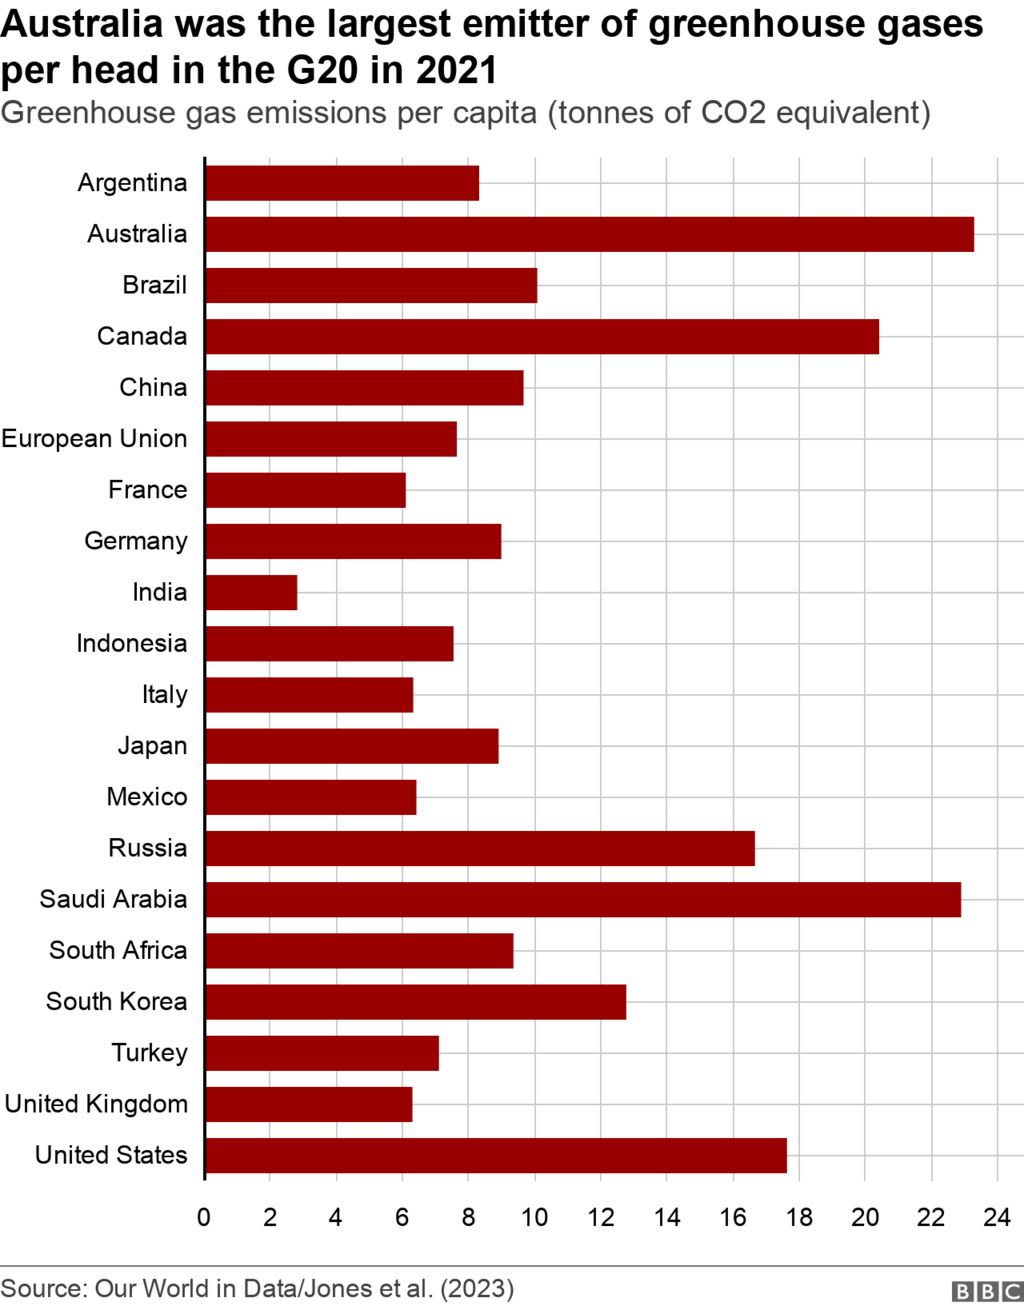 Гистограмма, показывающая уровень выбросов на душу населения в Австралии по сравнению с другими странами G20